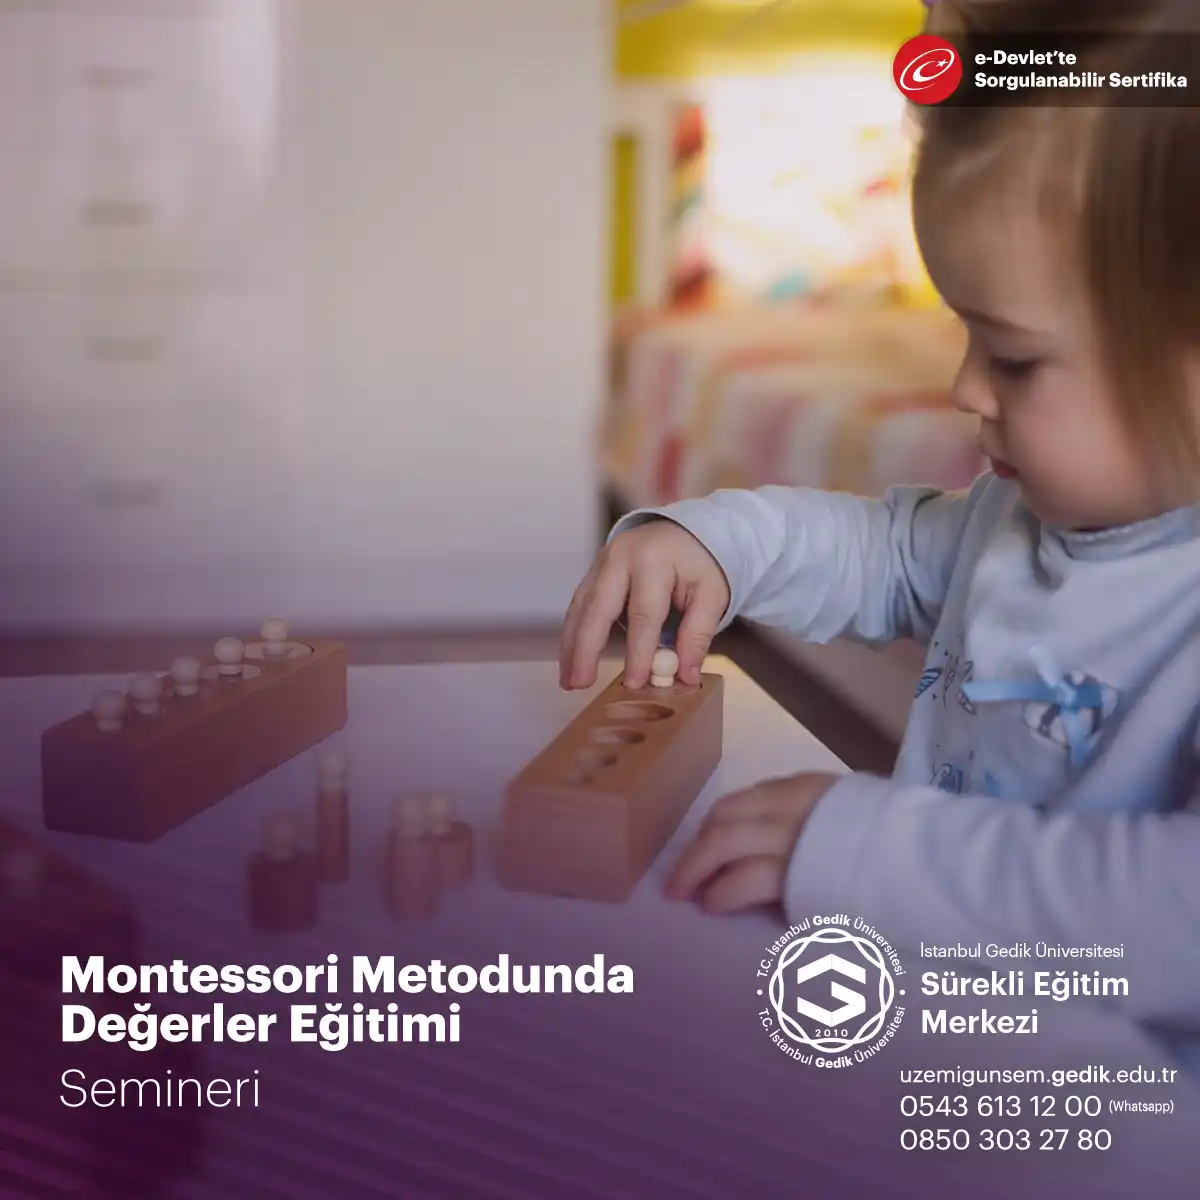 Montessori metodunda değerler eğitimi, Maria Montessori'nin öğretim felsefesinin temel taşlarından birini oluşturur.